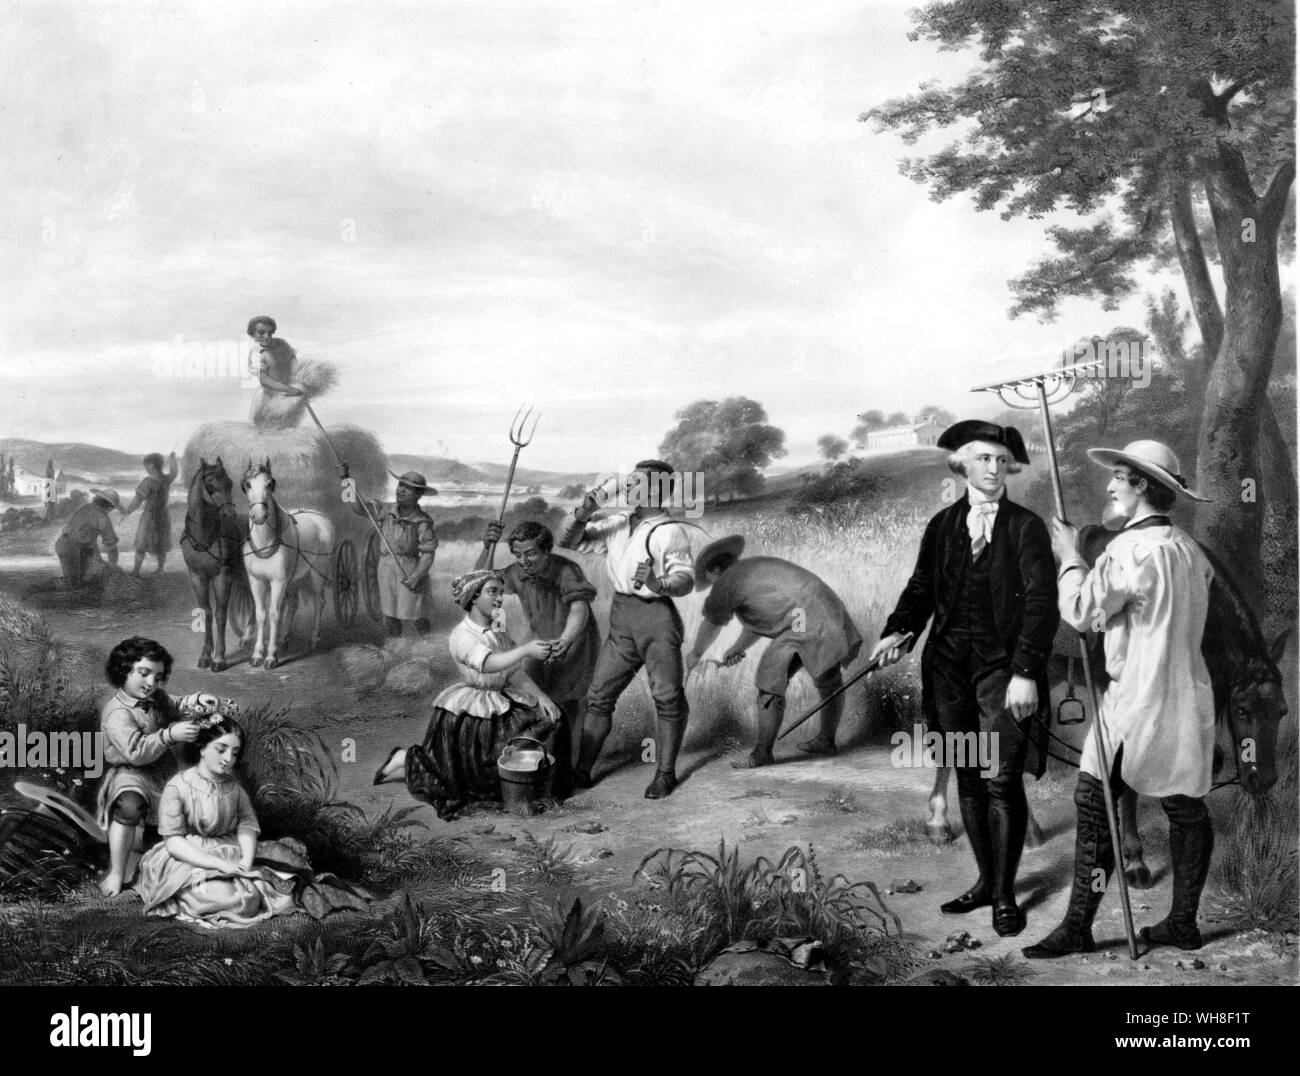 Das Leben von George Washington 1853. Lithographie von George Washington (1732-1799) Mount Vernon während der Heuernte. Lithographie von Claude Regnier (d. 1860) nach einem Gemälde von Junius Brutus Stearns, (1810-1885). . Stockfoto